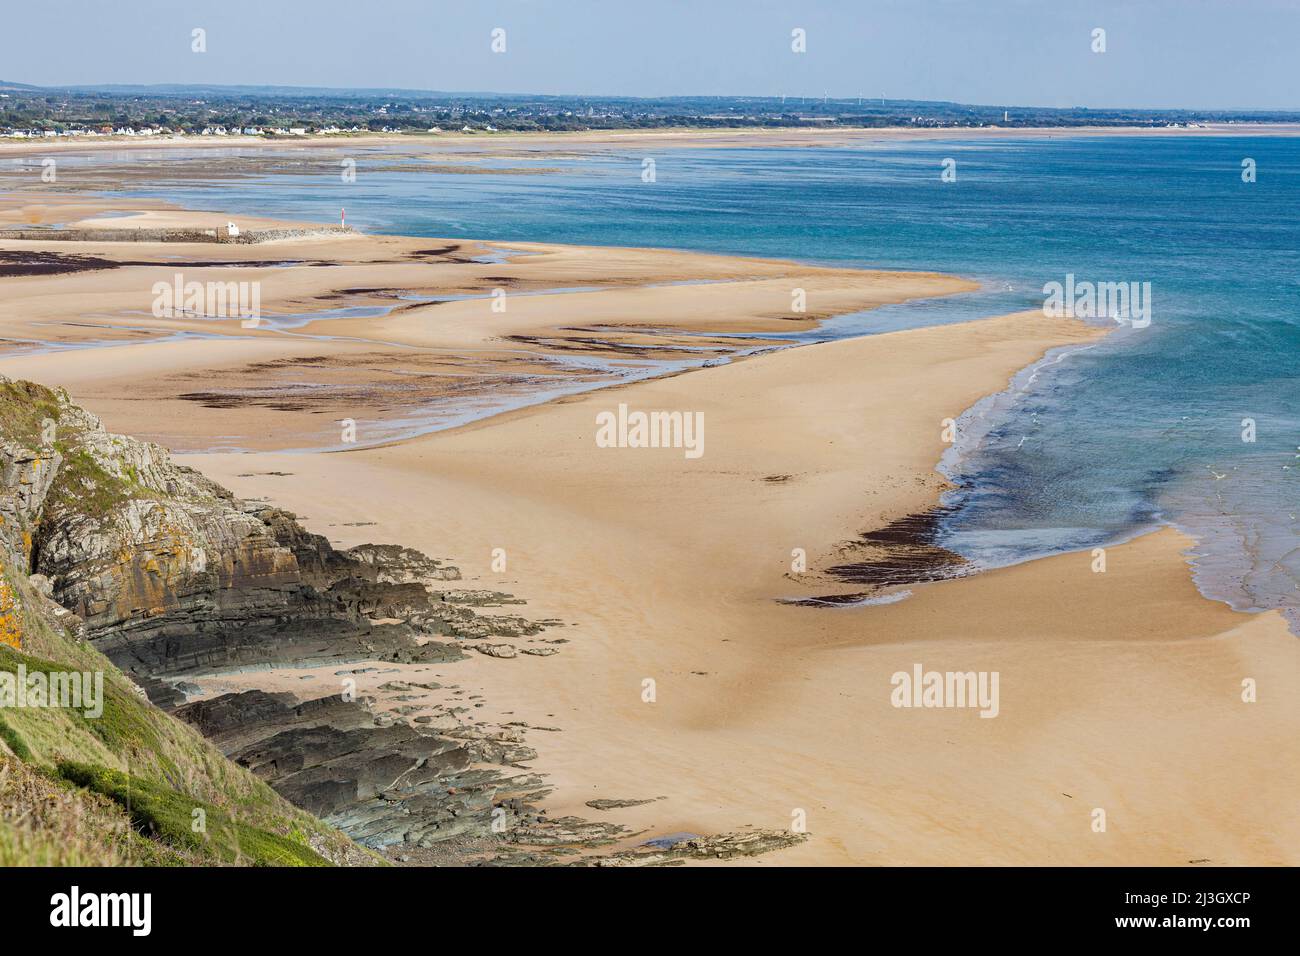 France, Manche, Cotentin, Barneville-Carteret, Cap de Carteret, Carteret beach and turquoise blue sea Stock Photo